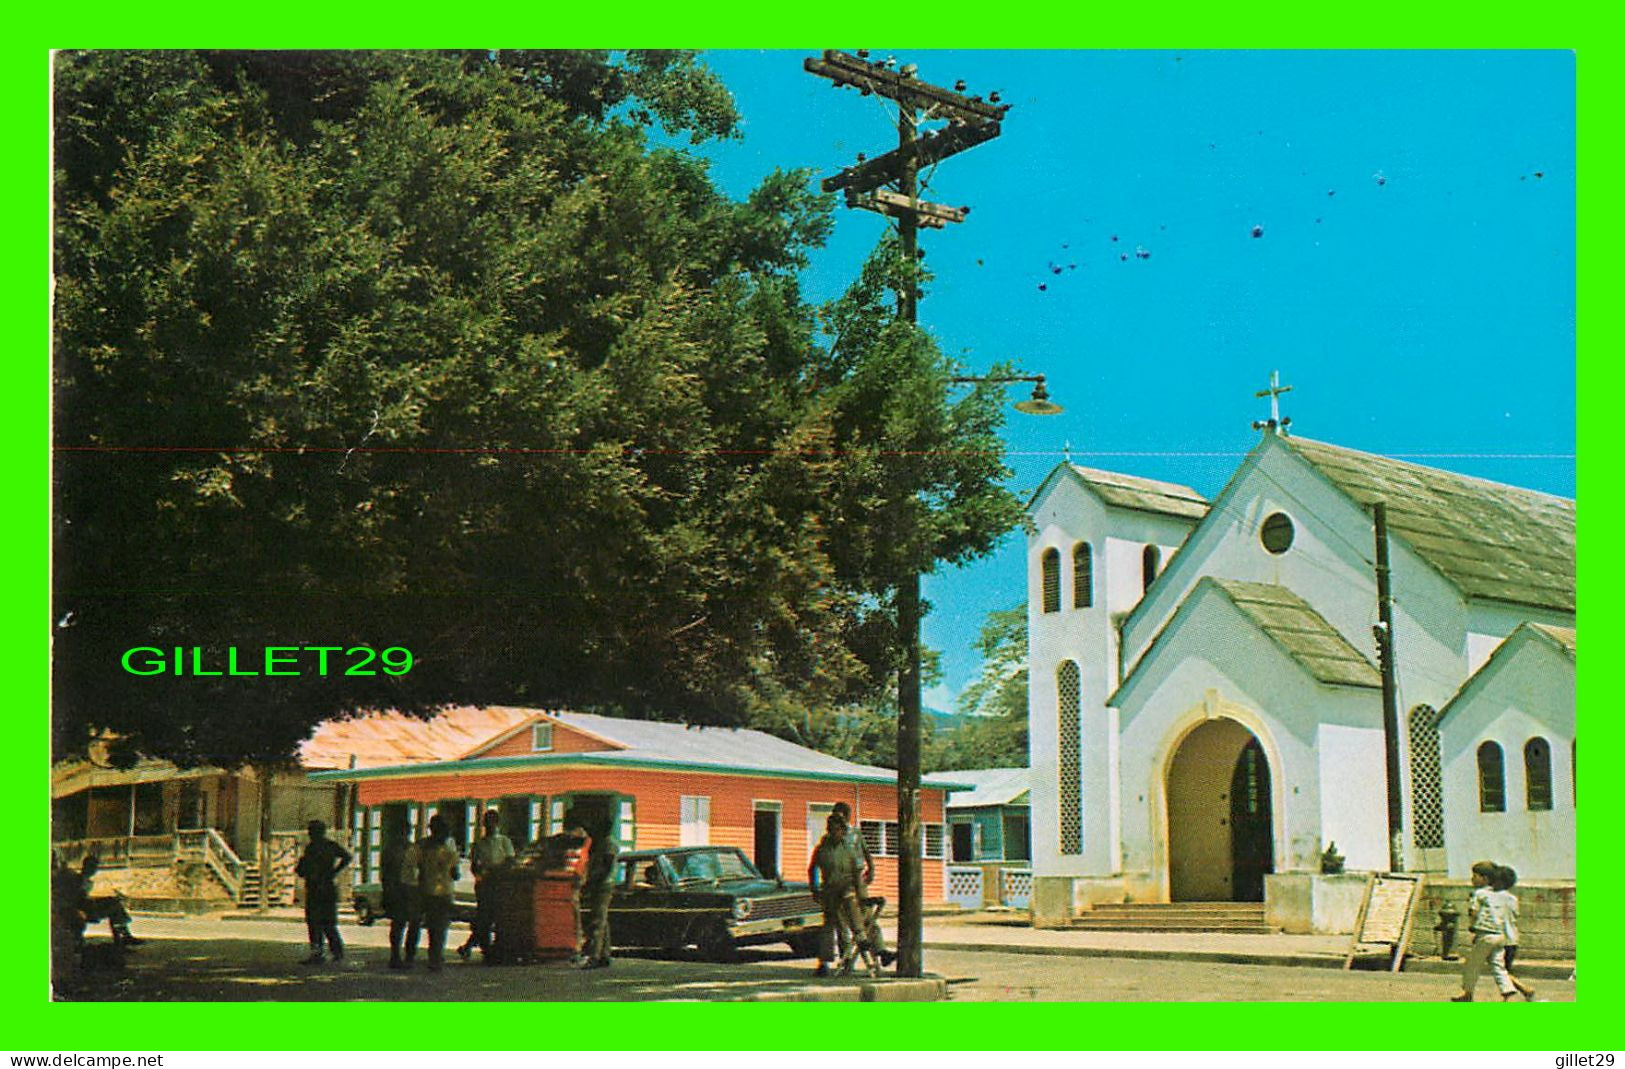 TAMBORIL, RÉPUBLIQUE DOMINICAINE - PARQUE E IGLESIA DE TAMBORIL - CHURCH & PARK OF TAMBORIL - WRITTEN - LIBRERIA TONY - - Dominican Republic